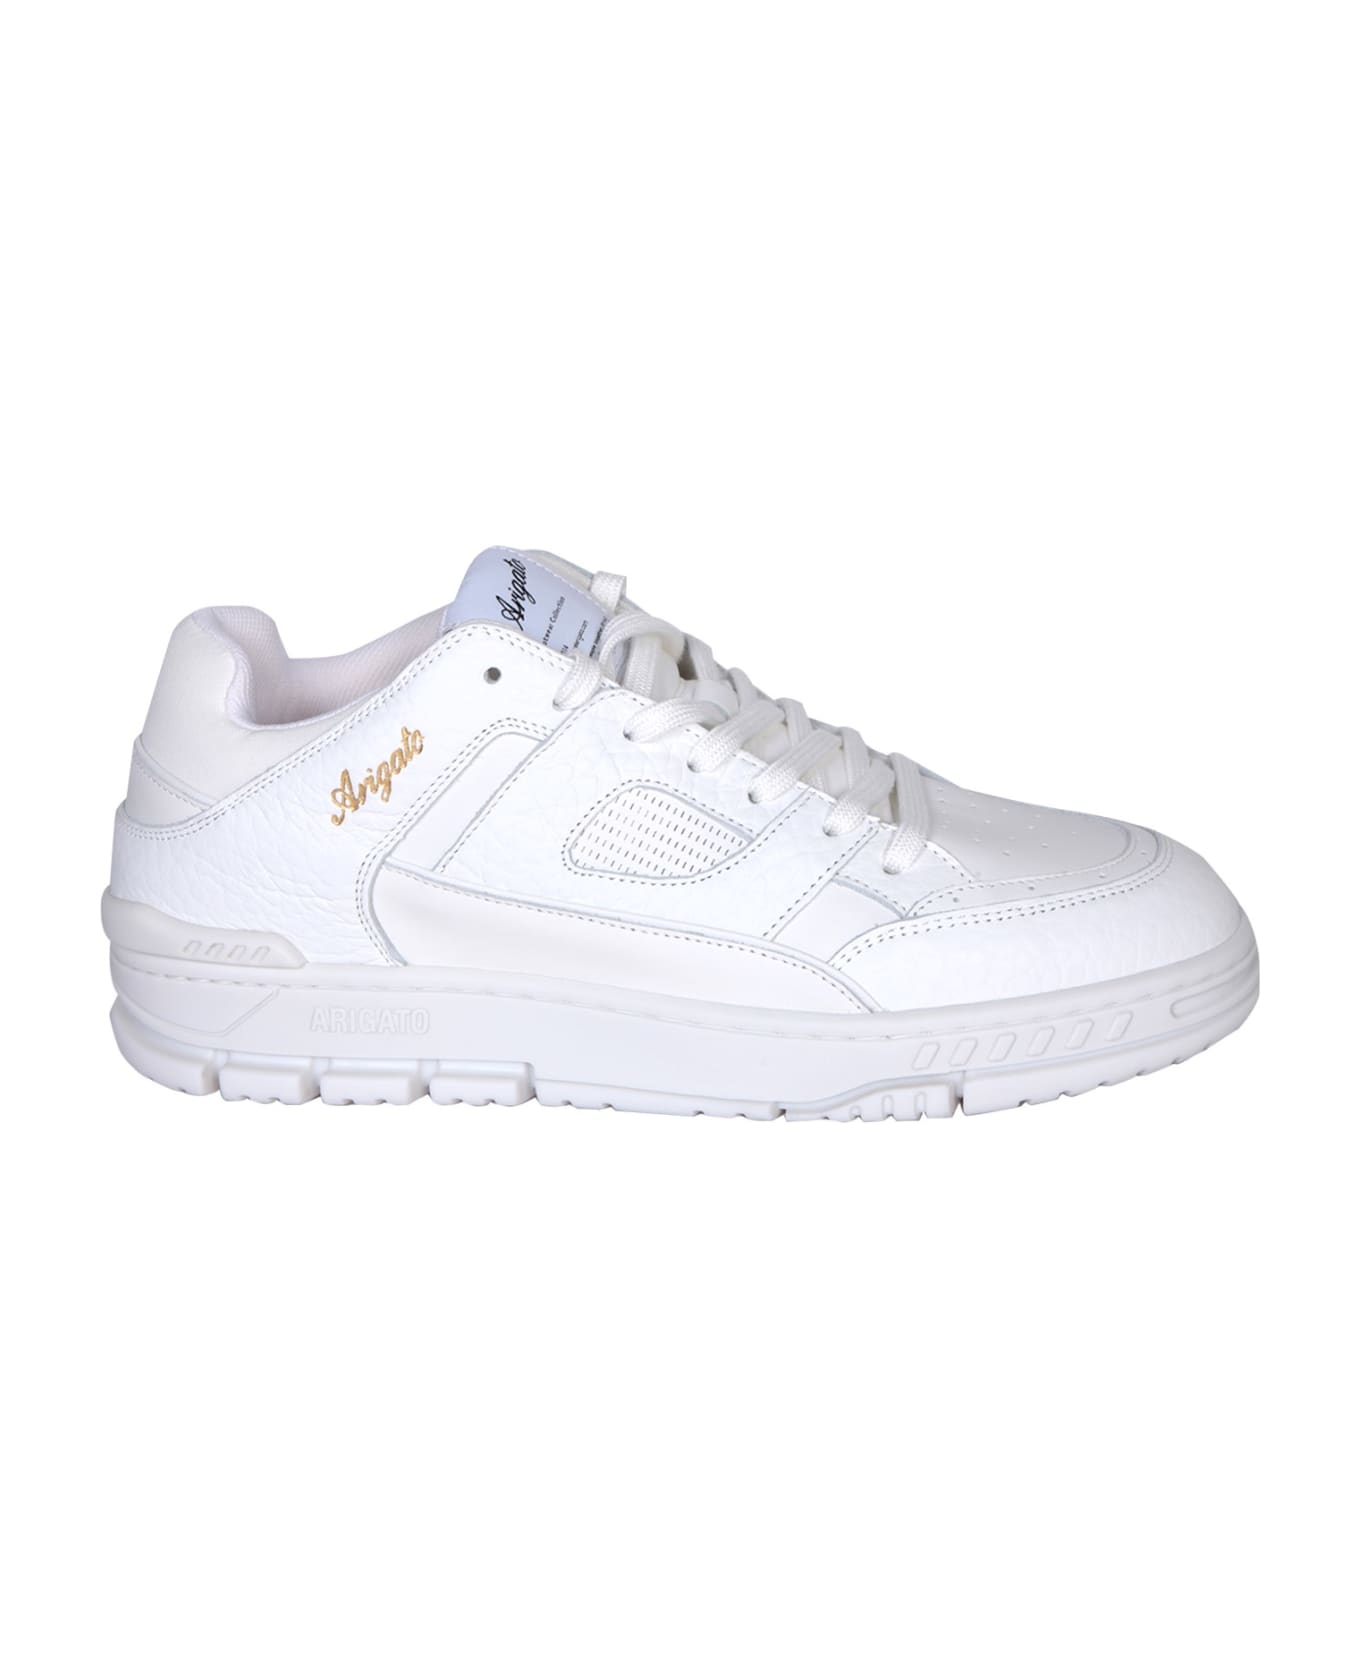 Axel Arigato Area Lo White Sneakers - White